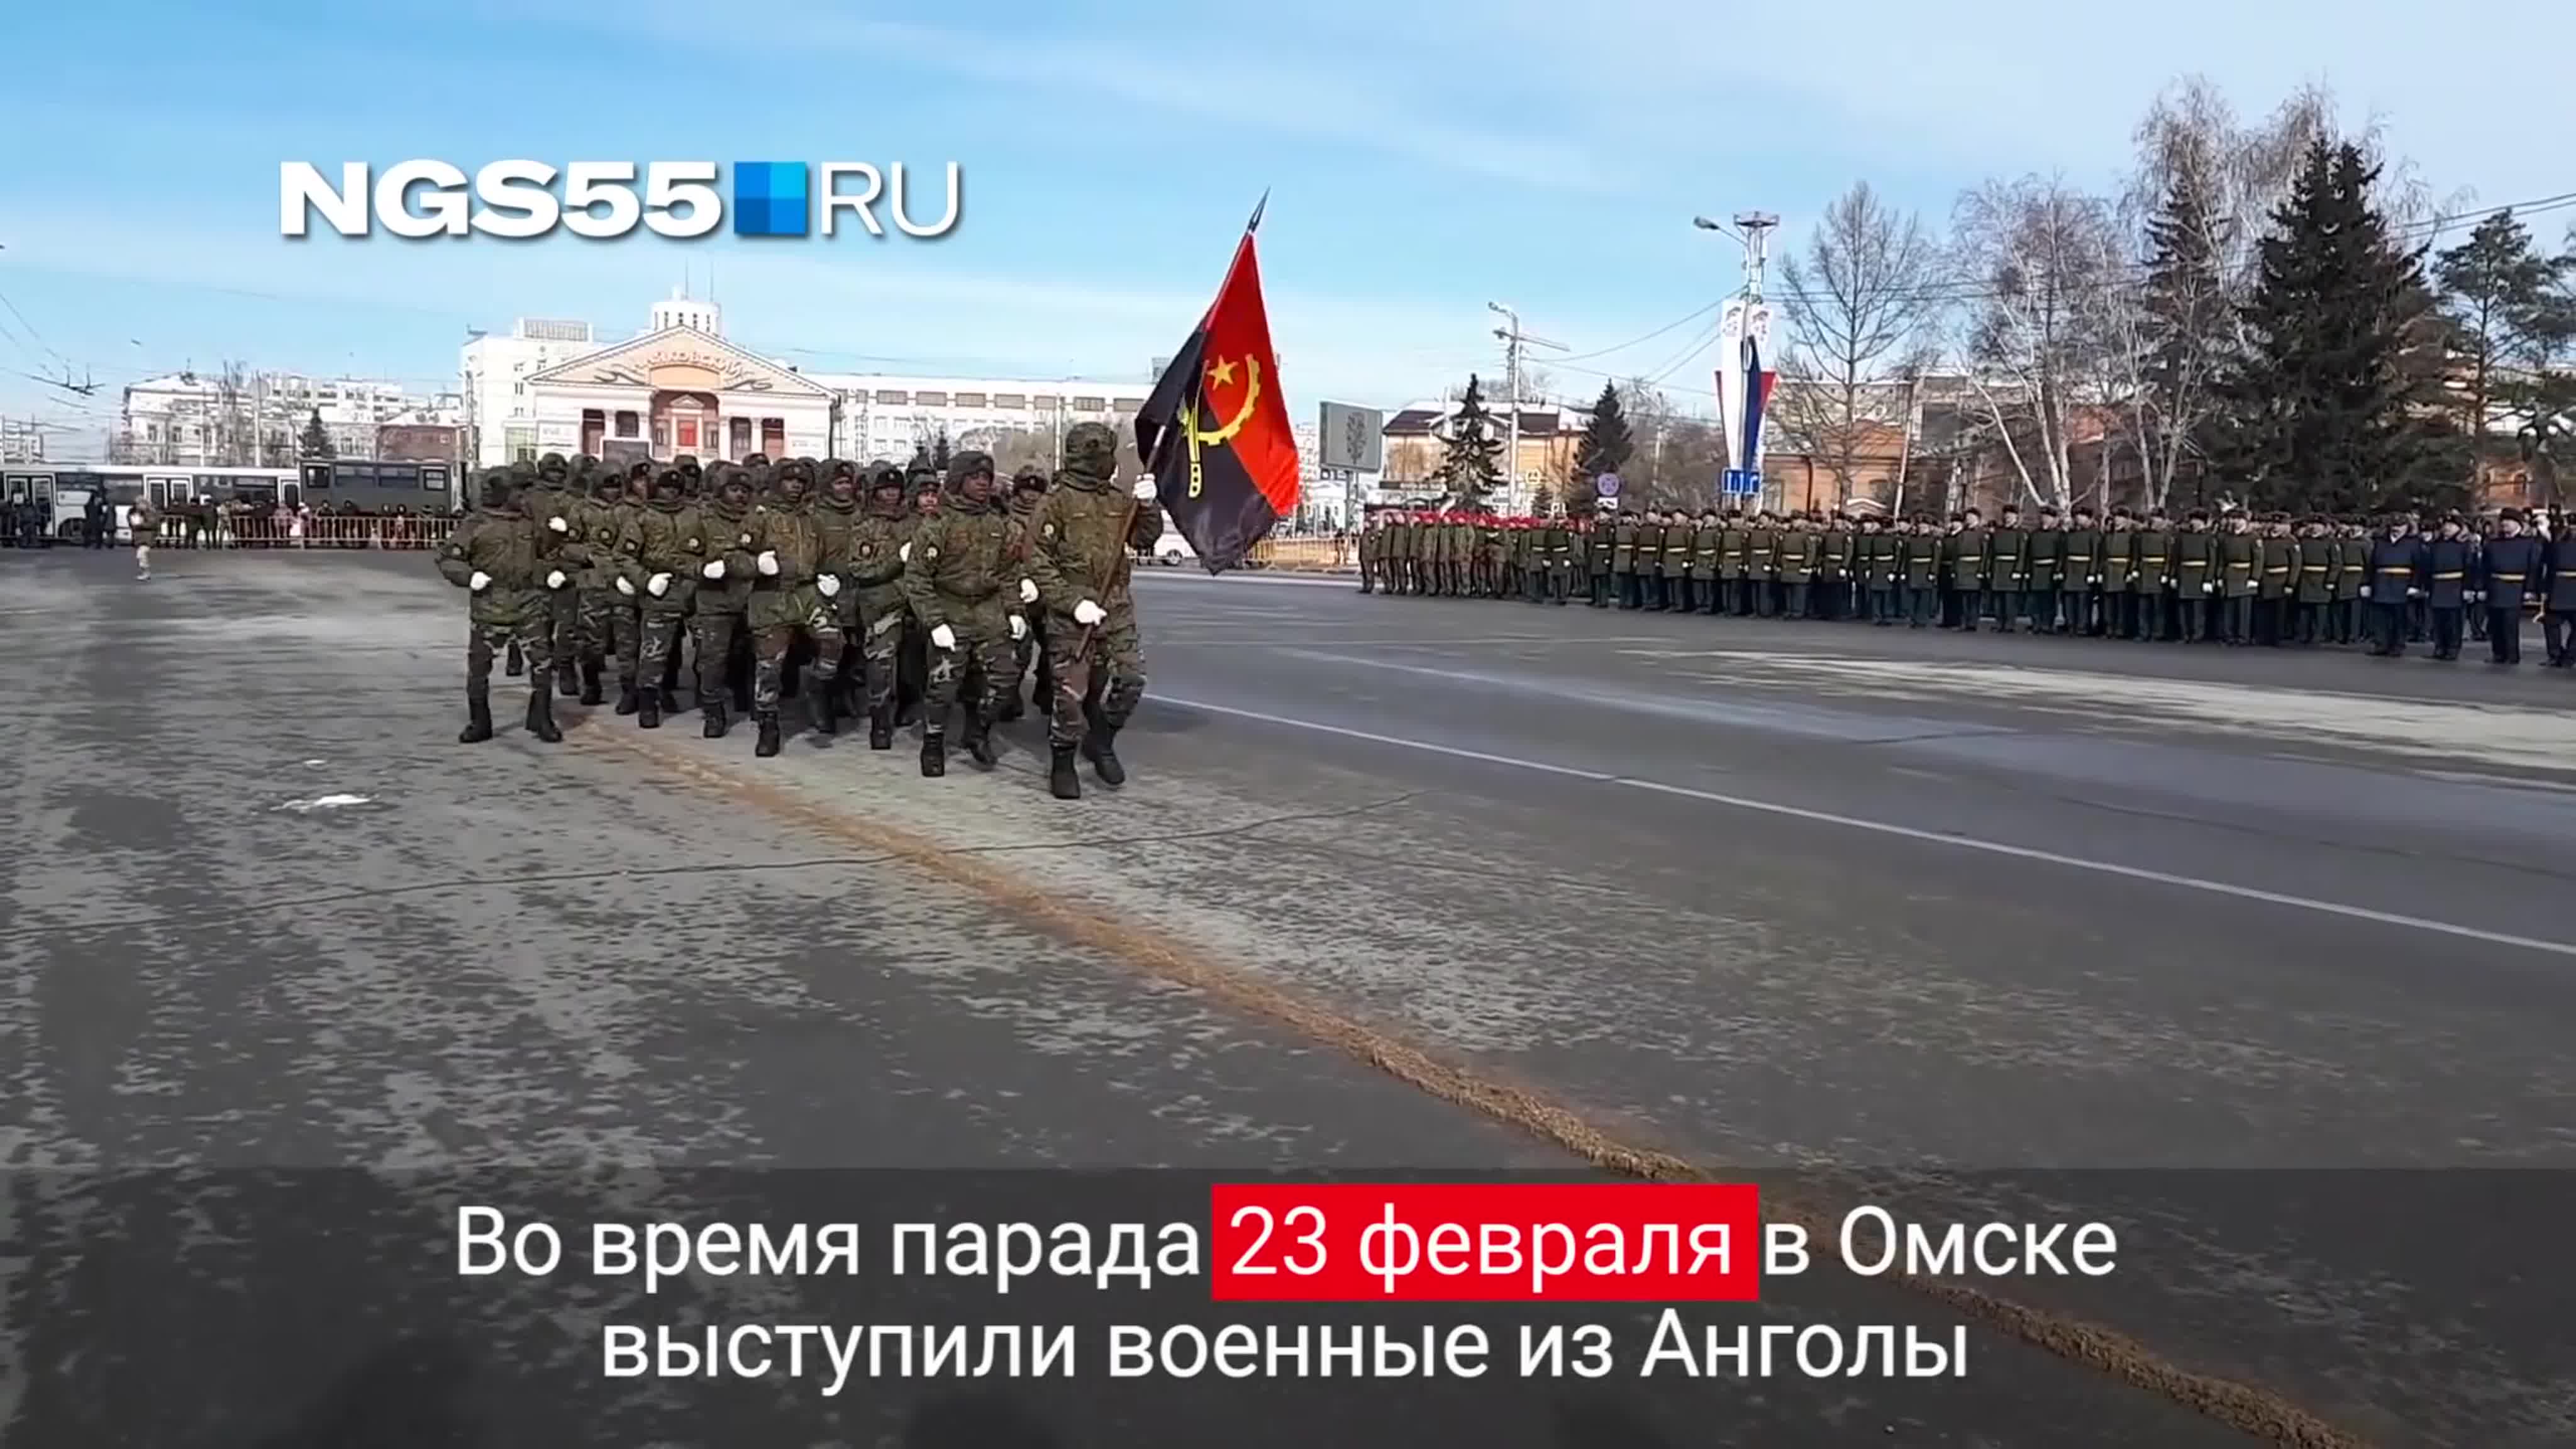 Videos de NGS55RU Омск